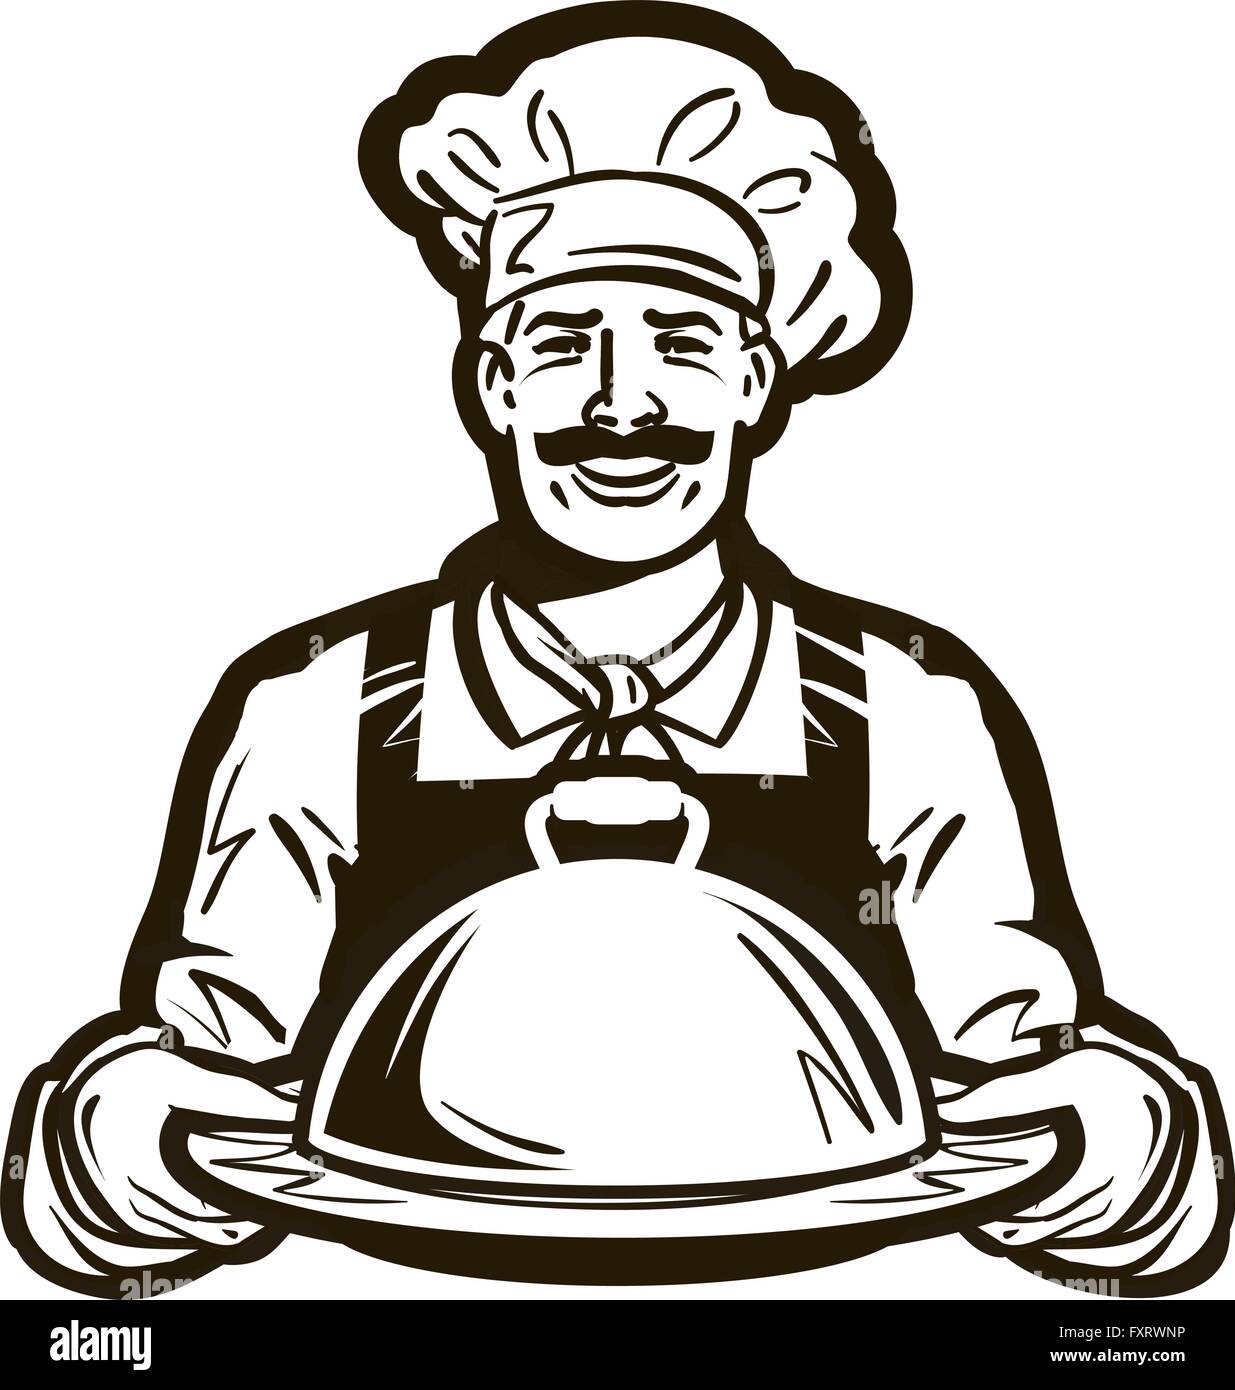 Chef cuisinier d'icônes. Hand drawn chefs toque vector illustration,  cuisine cuisinière caps isolé sur fond blanc Image Vectorielle Stock - Alamy